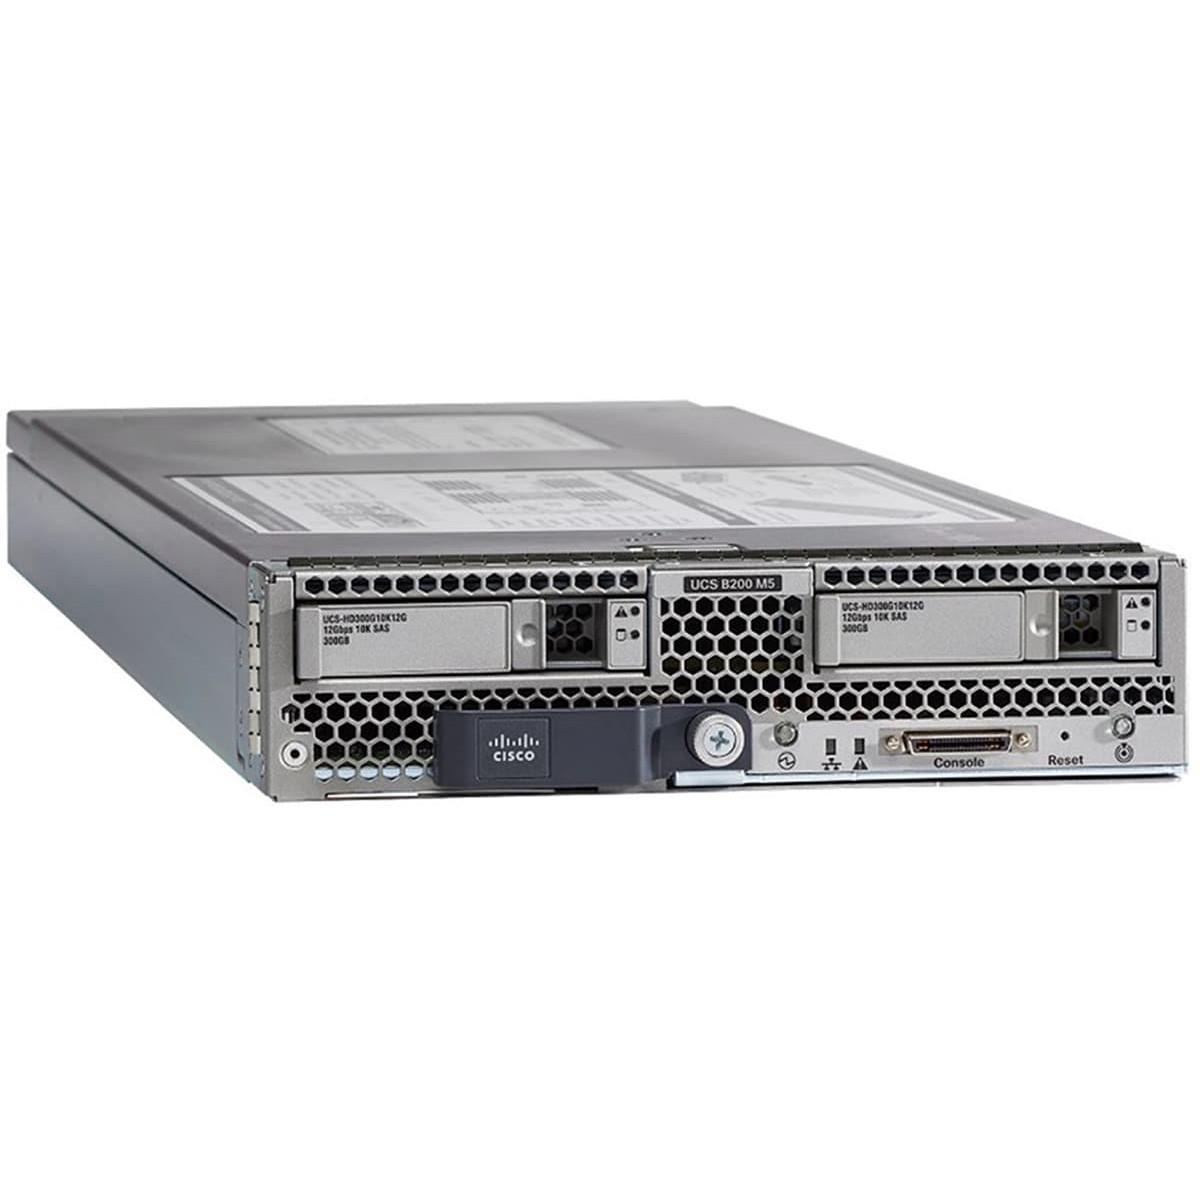 Cisco UCS B200 M5 Blade w-o CPU mem HDD mezz - Blade Servers - Serial Attached SCSI (SAS)